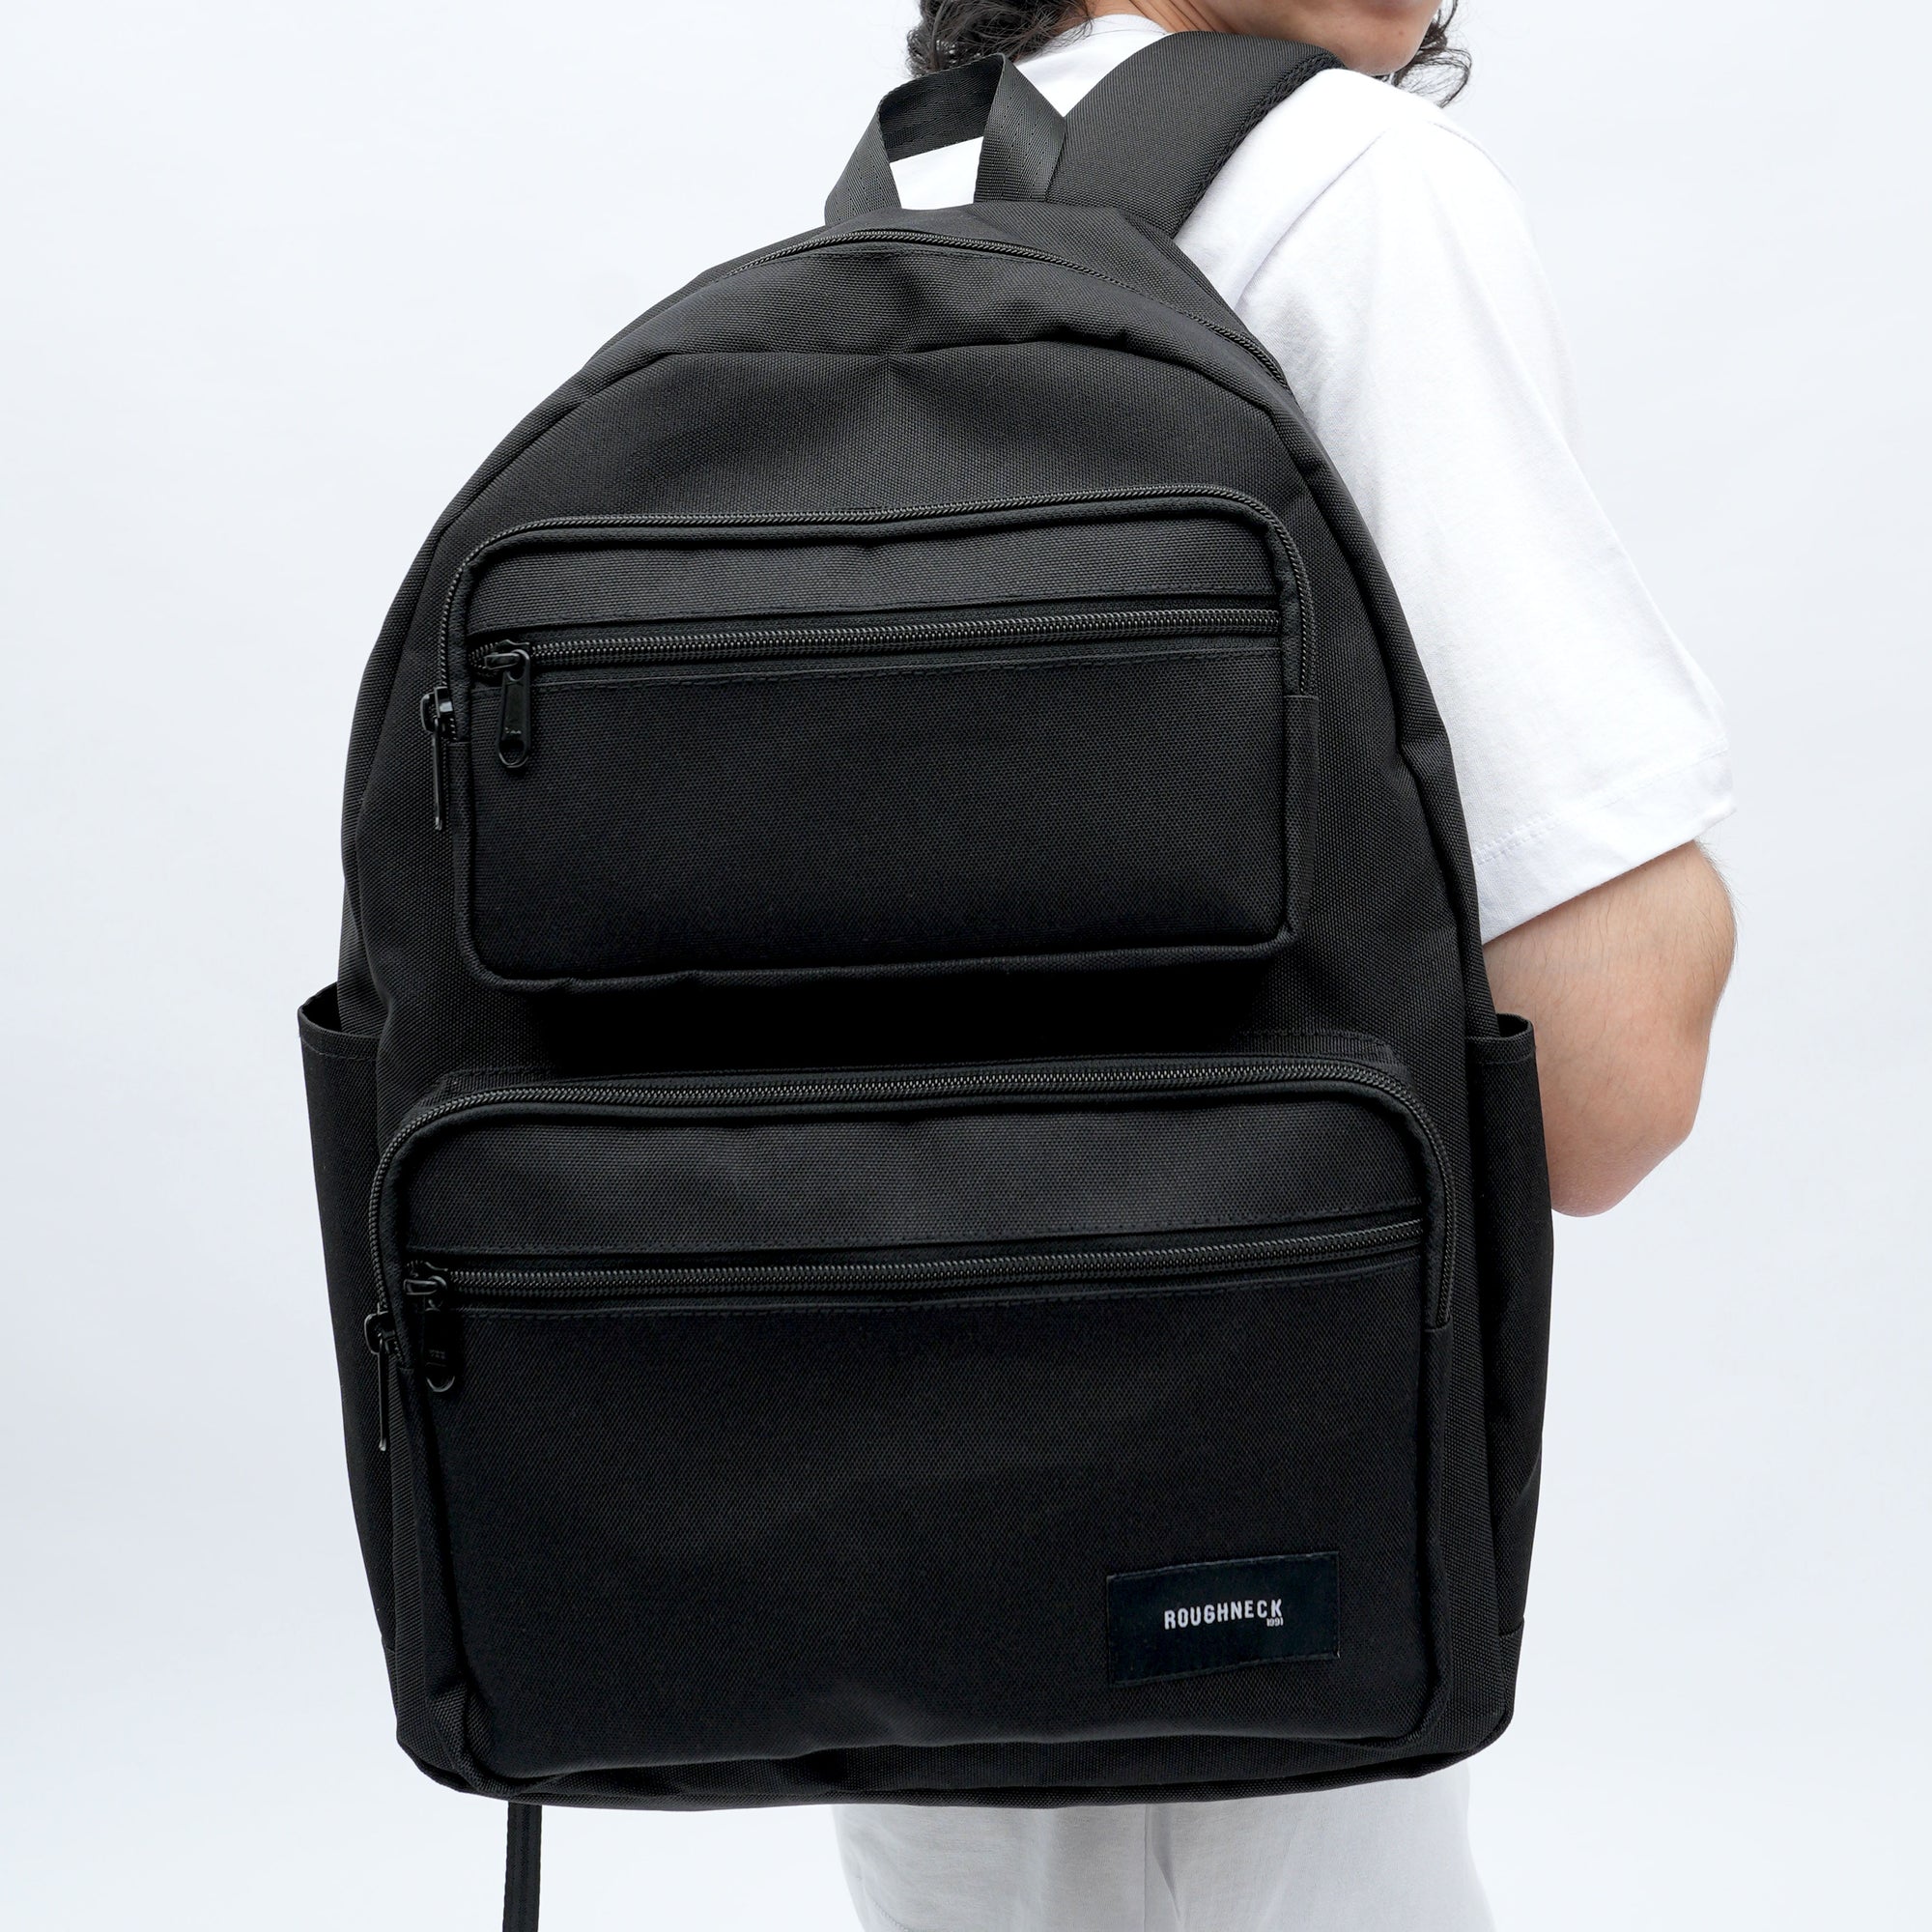 Roughneck BP034 Black Back To School Backpack